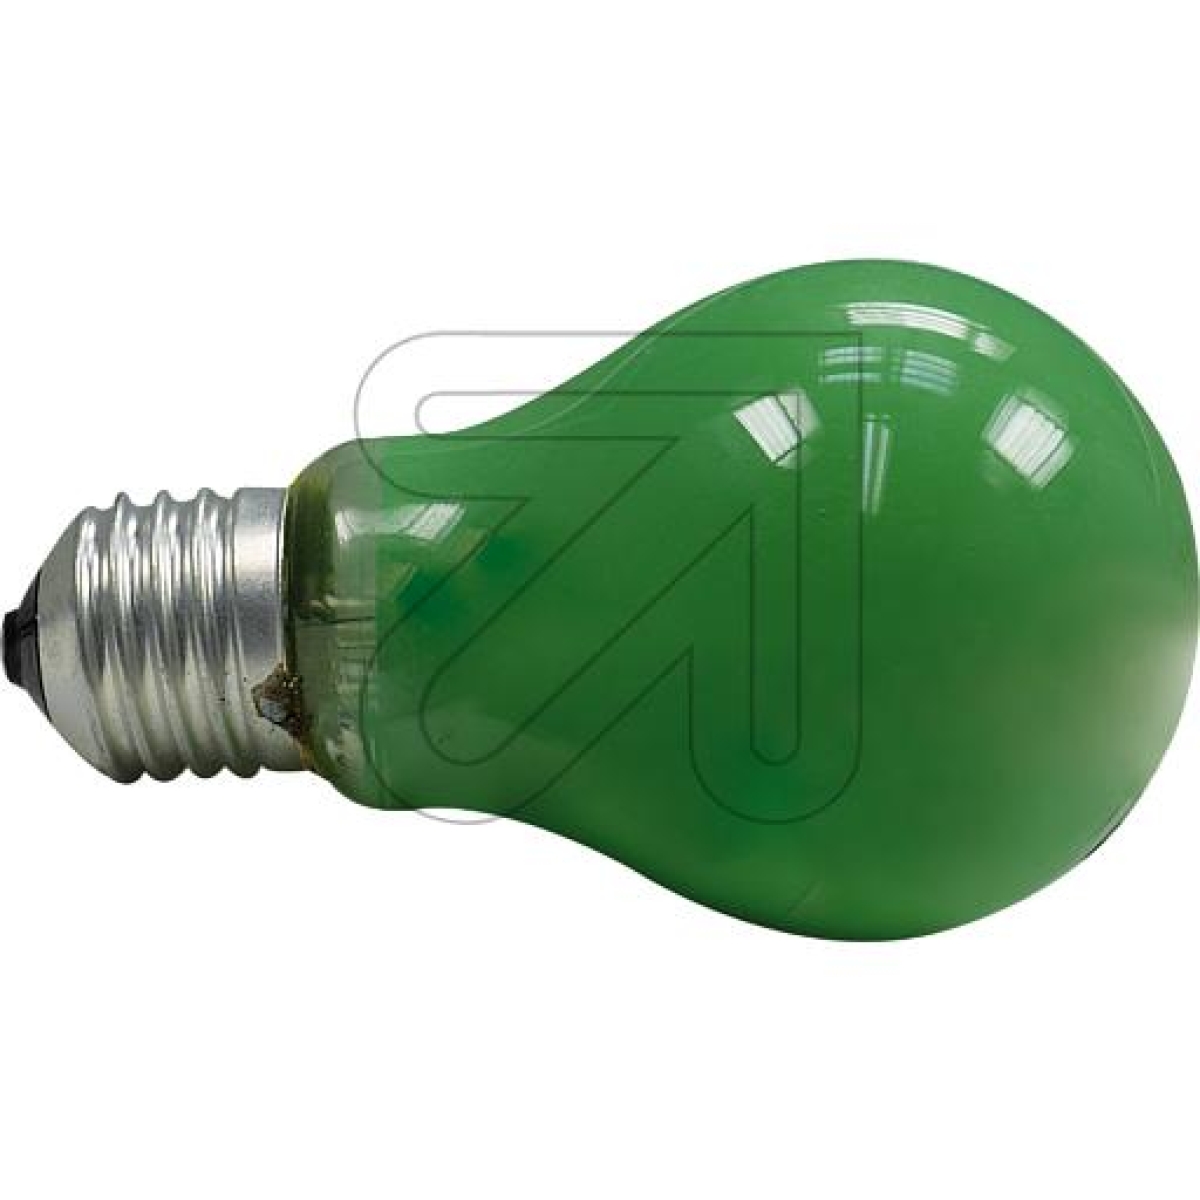 LEDmaxxAllgebrauchslampe E27 25W grün gg106652Artikel-Nr: 511815